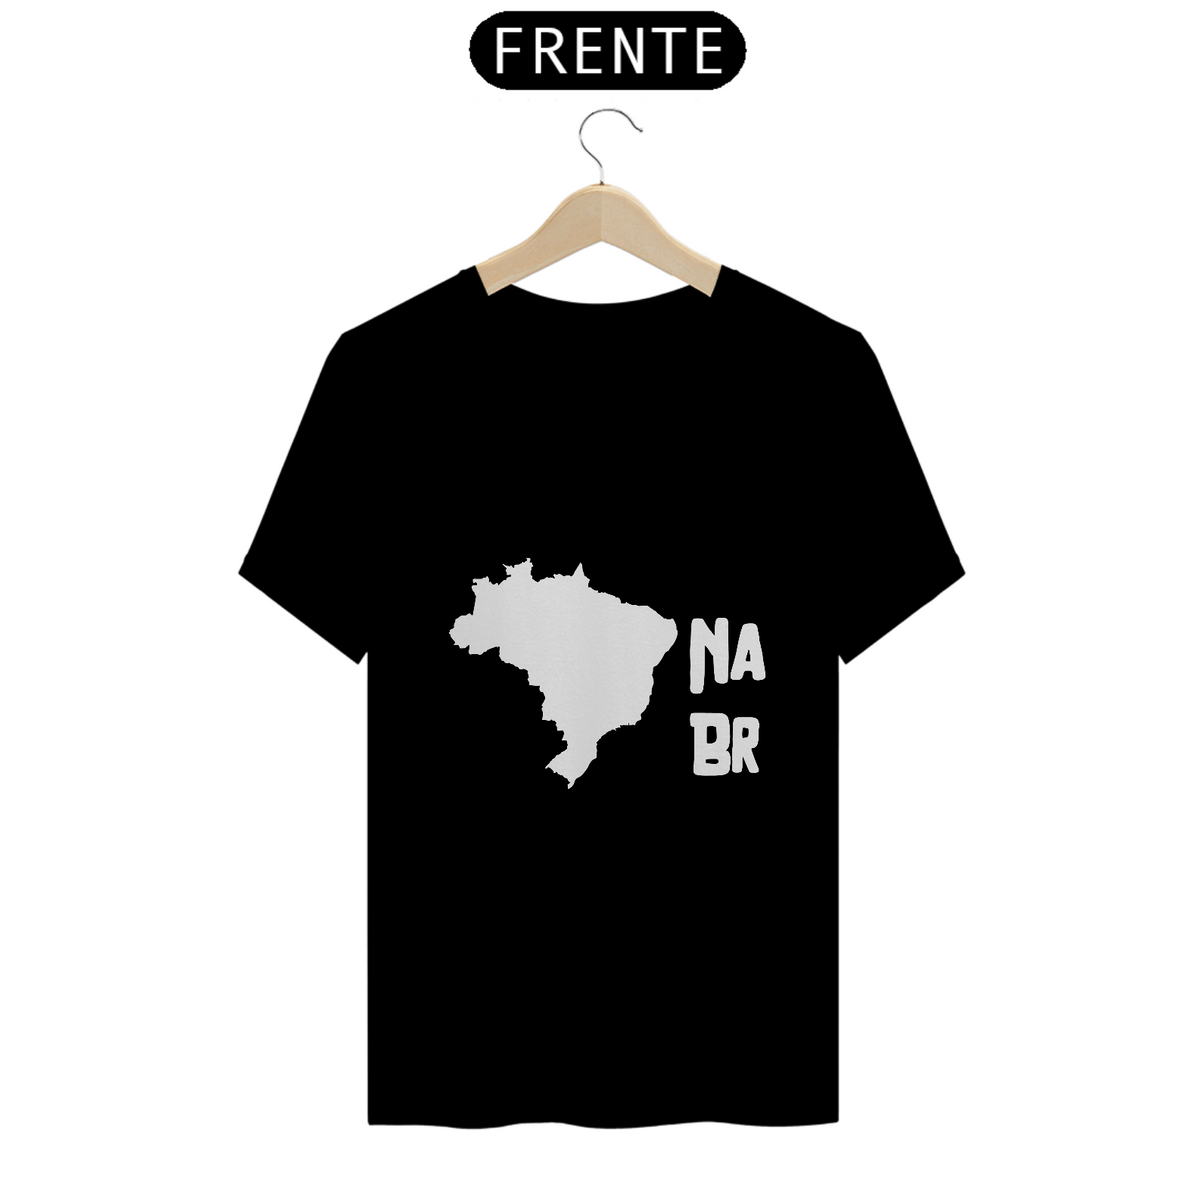 Nome do produto: T-Shirt NaBr